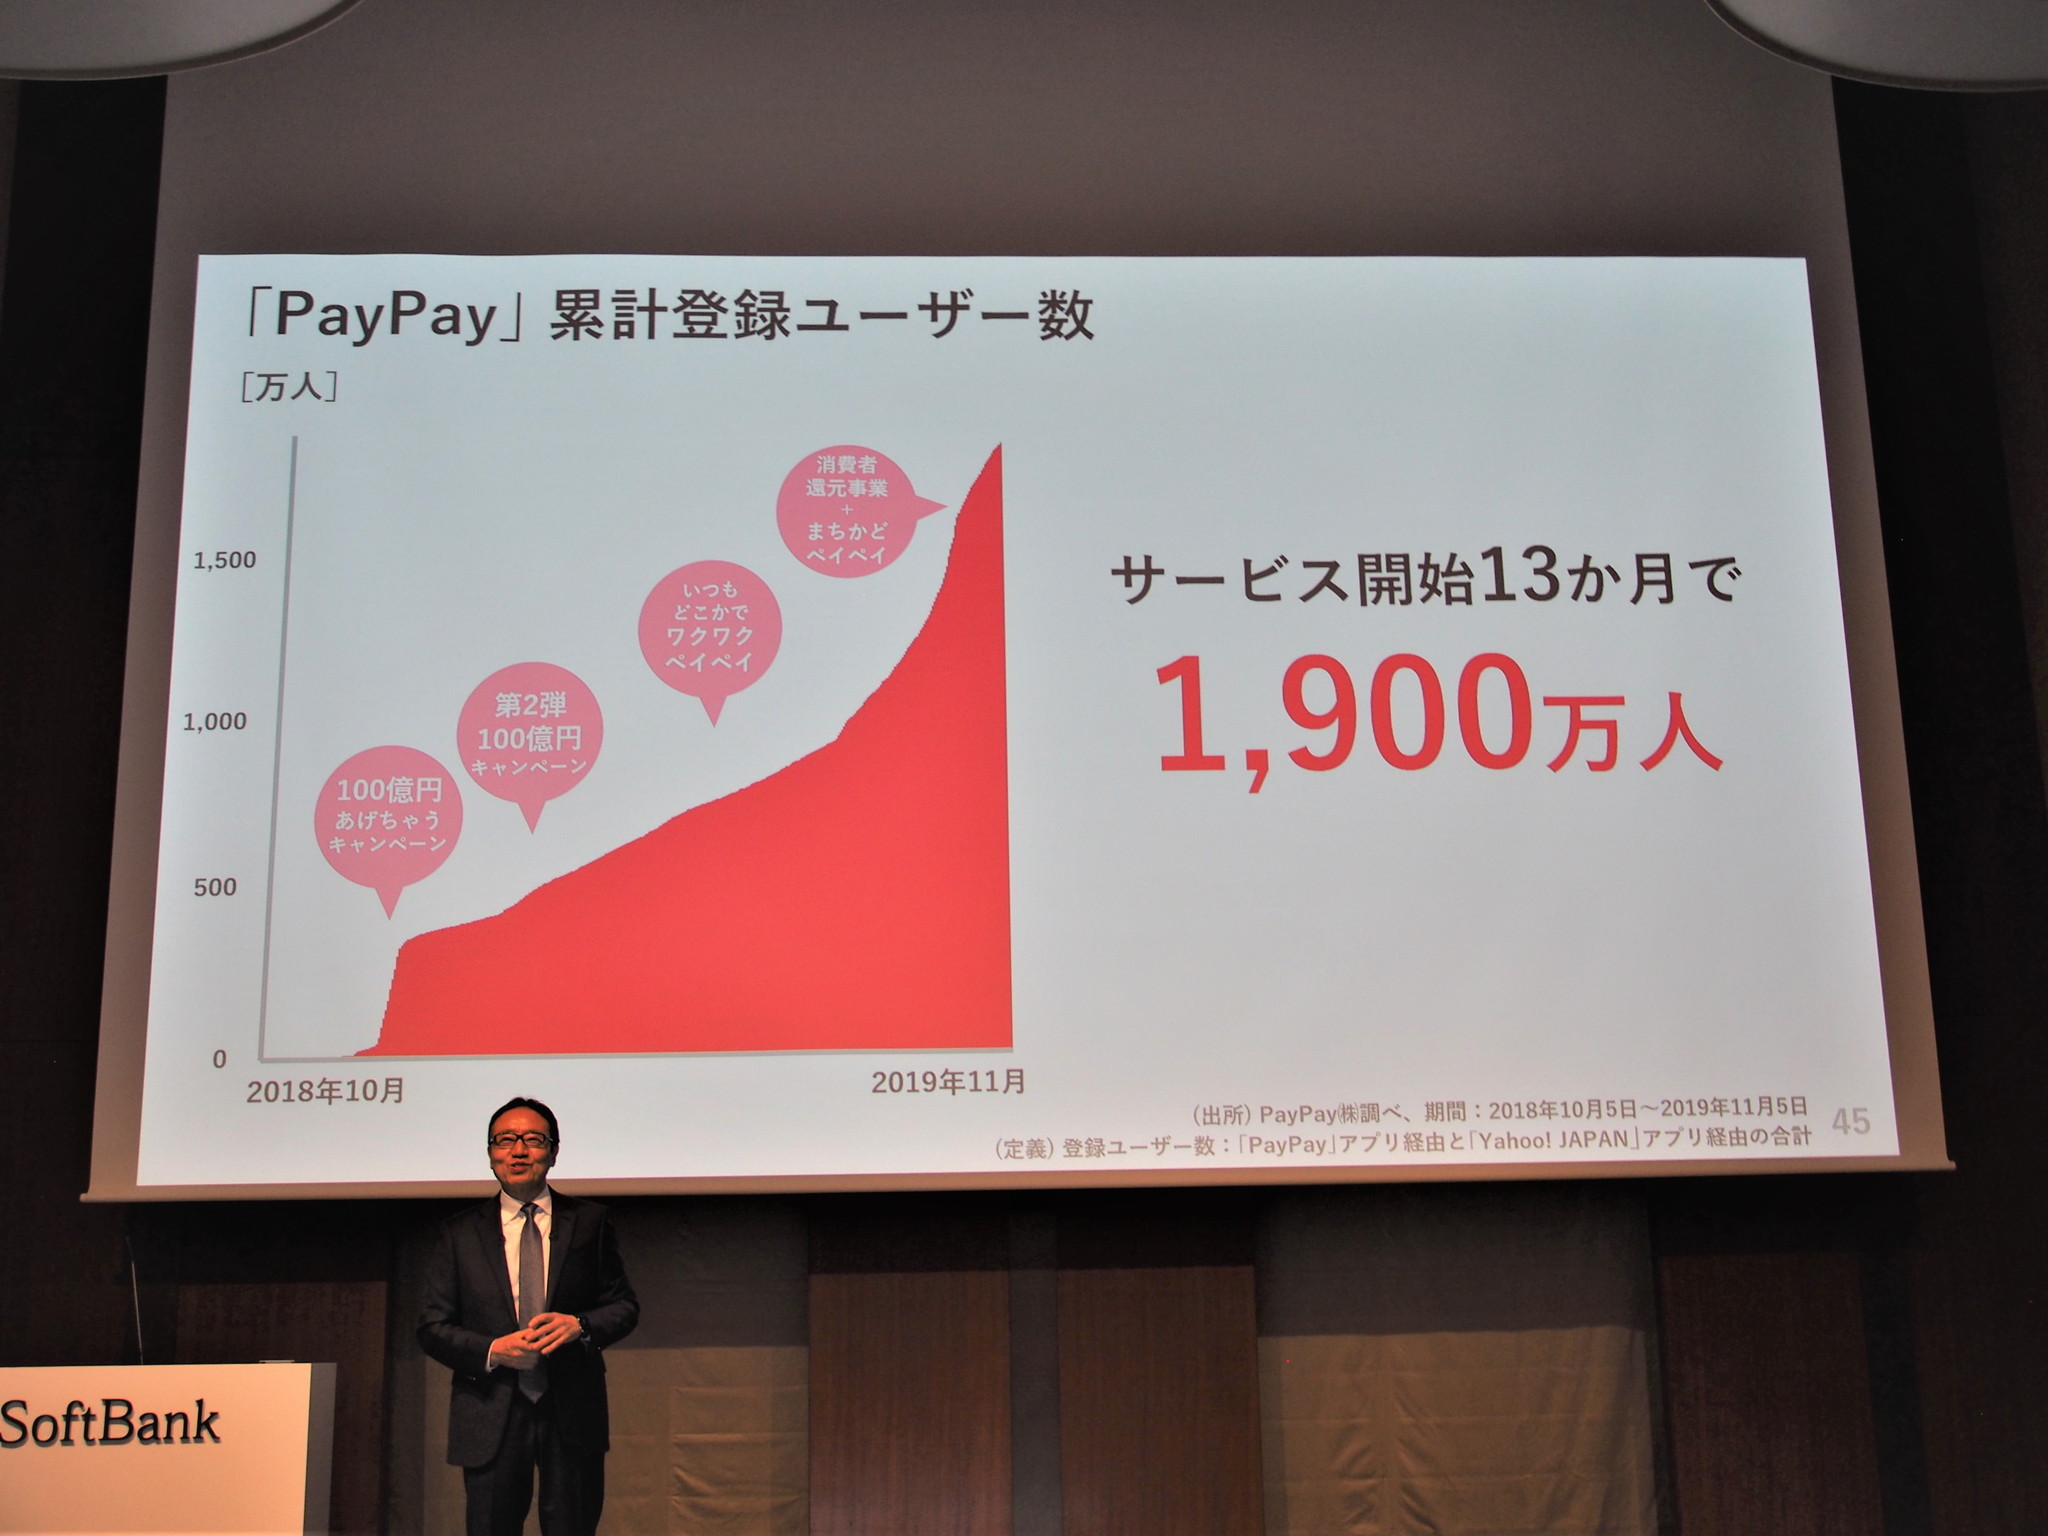 QRコード決済の「PayPay」は累計登録ユーザー数が1900万人にまで拡大。消費増税によるポイント還元を見越してか登録者が急増しているとのことだ